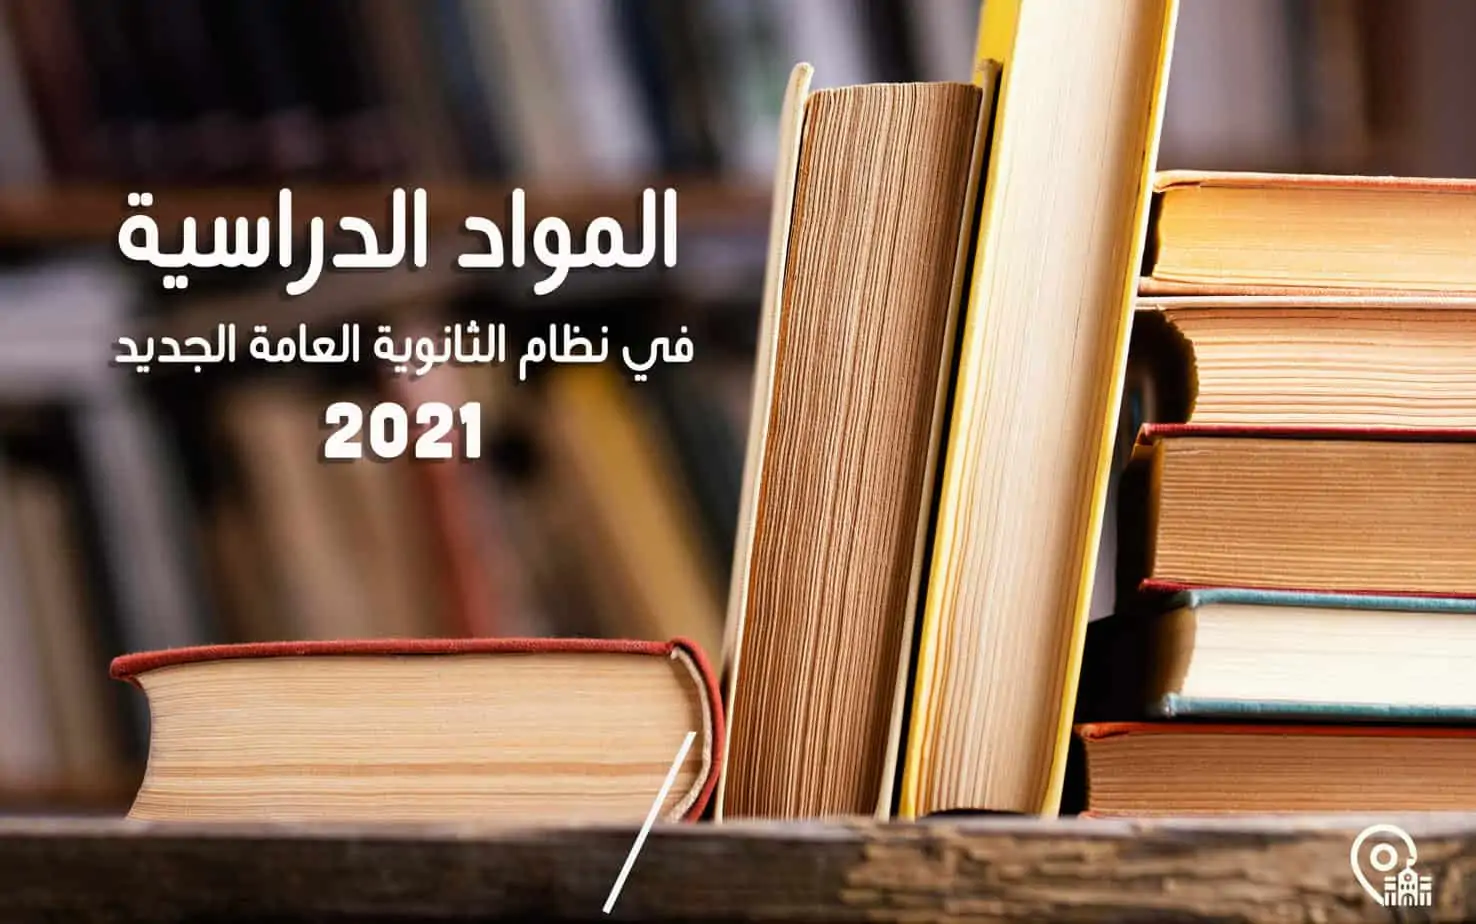 المواد الدراسية في نظام الثانوية العامة الجديد 2021